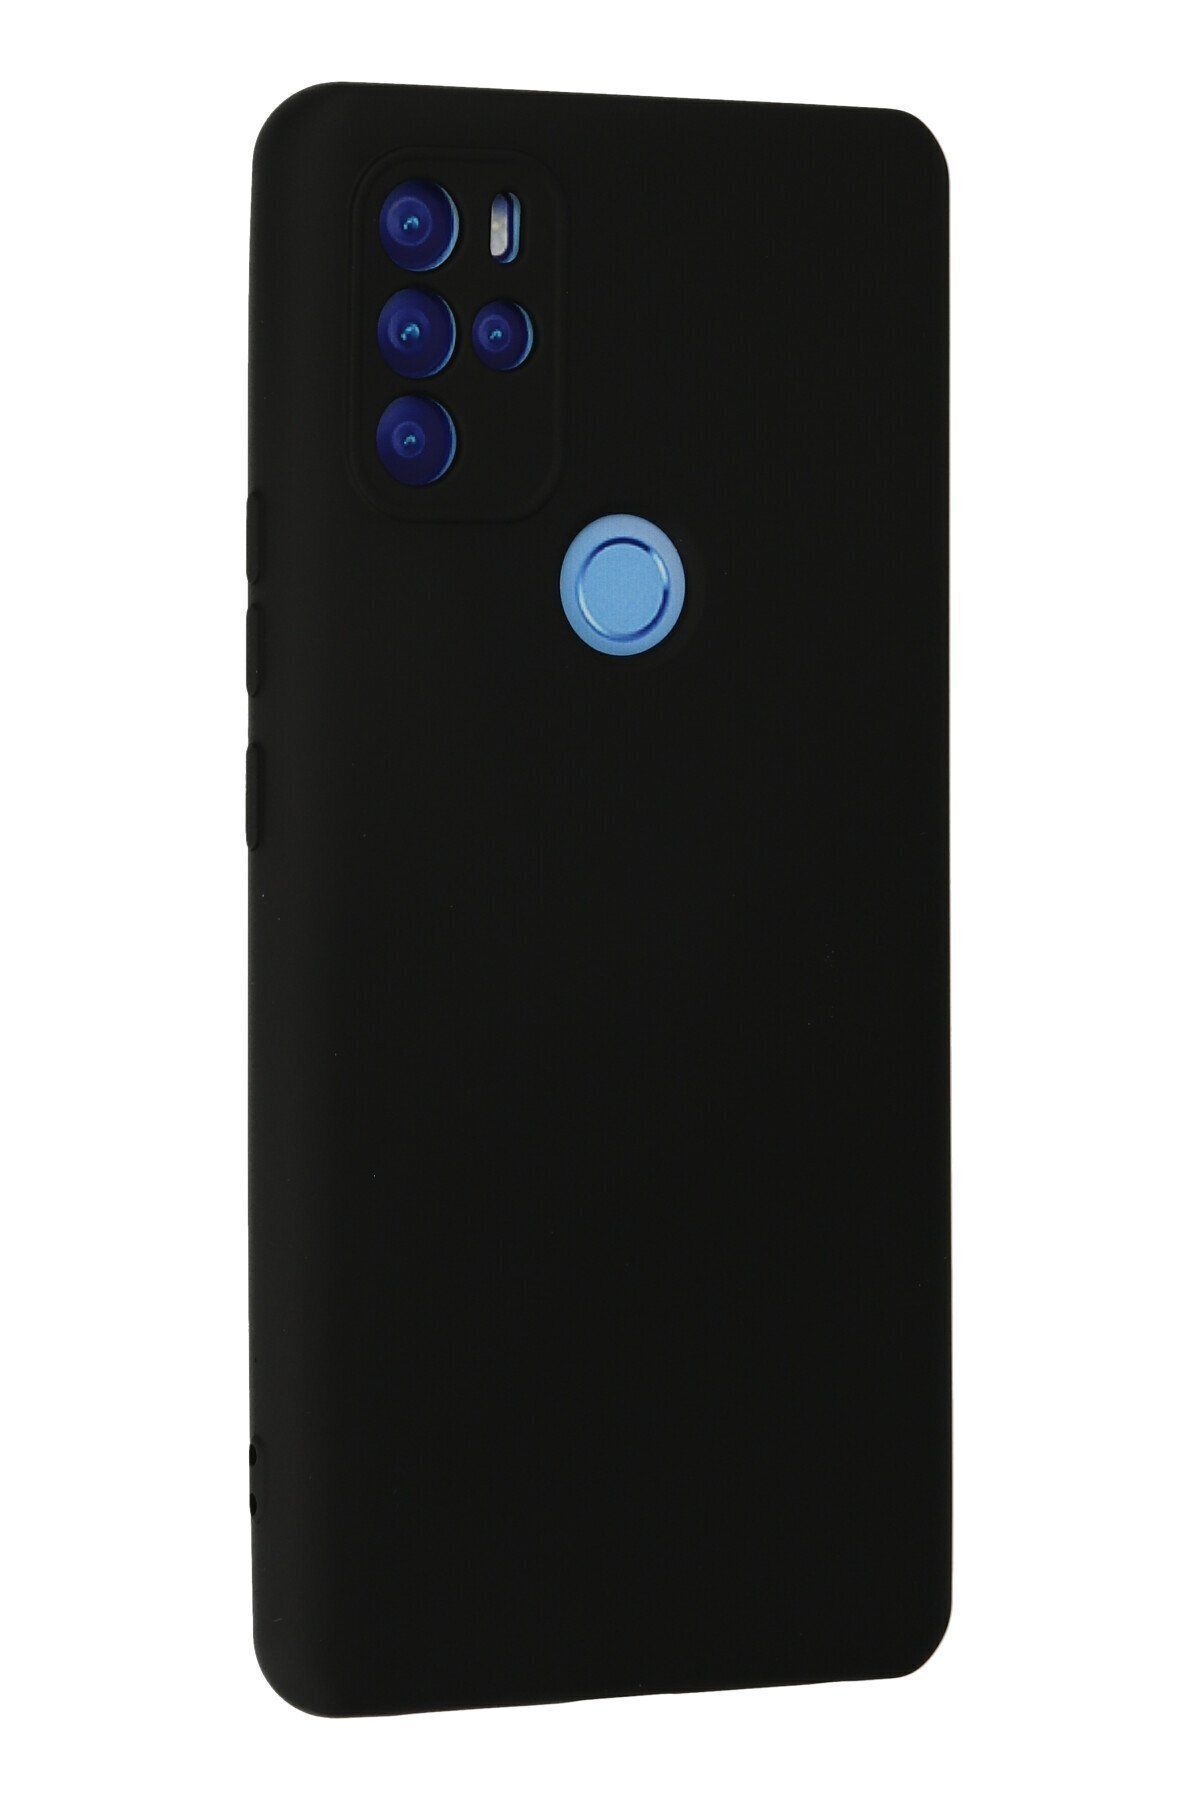 NewFace Omix X300 - Soft Dokulu İç Kısmı Süet Lansman Kılıf - Siyah Renk içi kadife Kapak